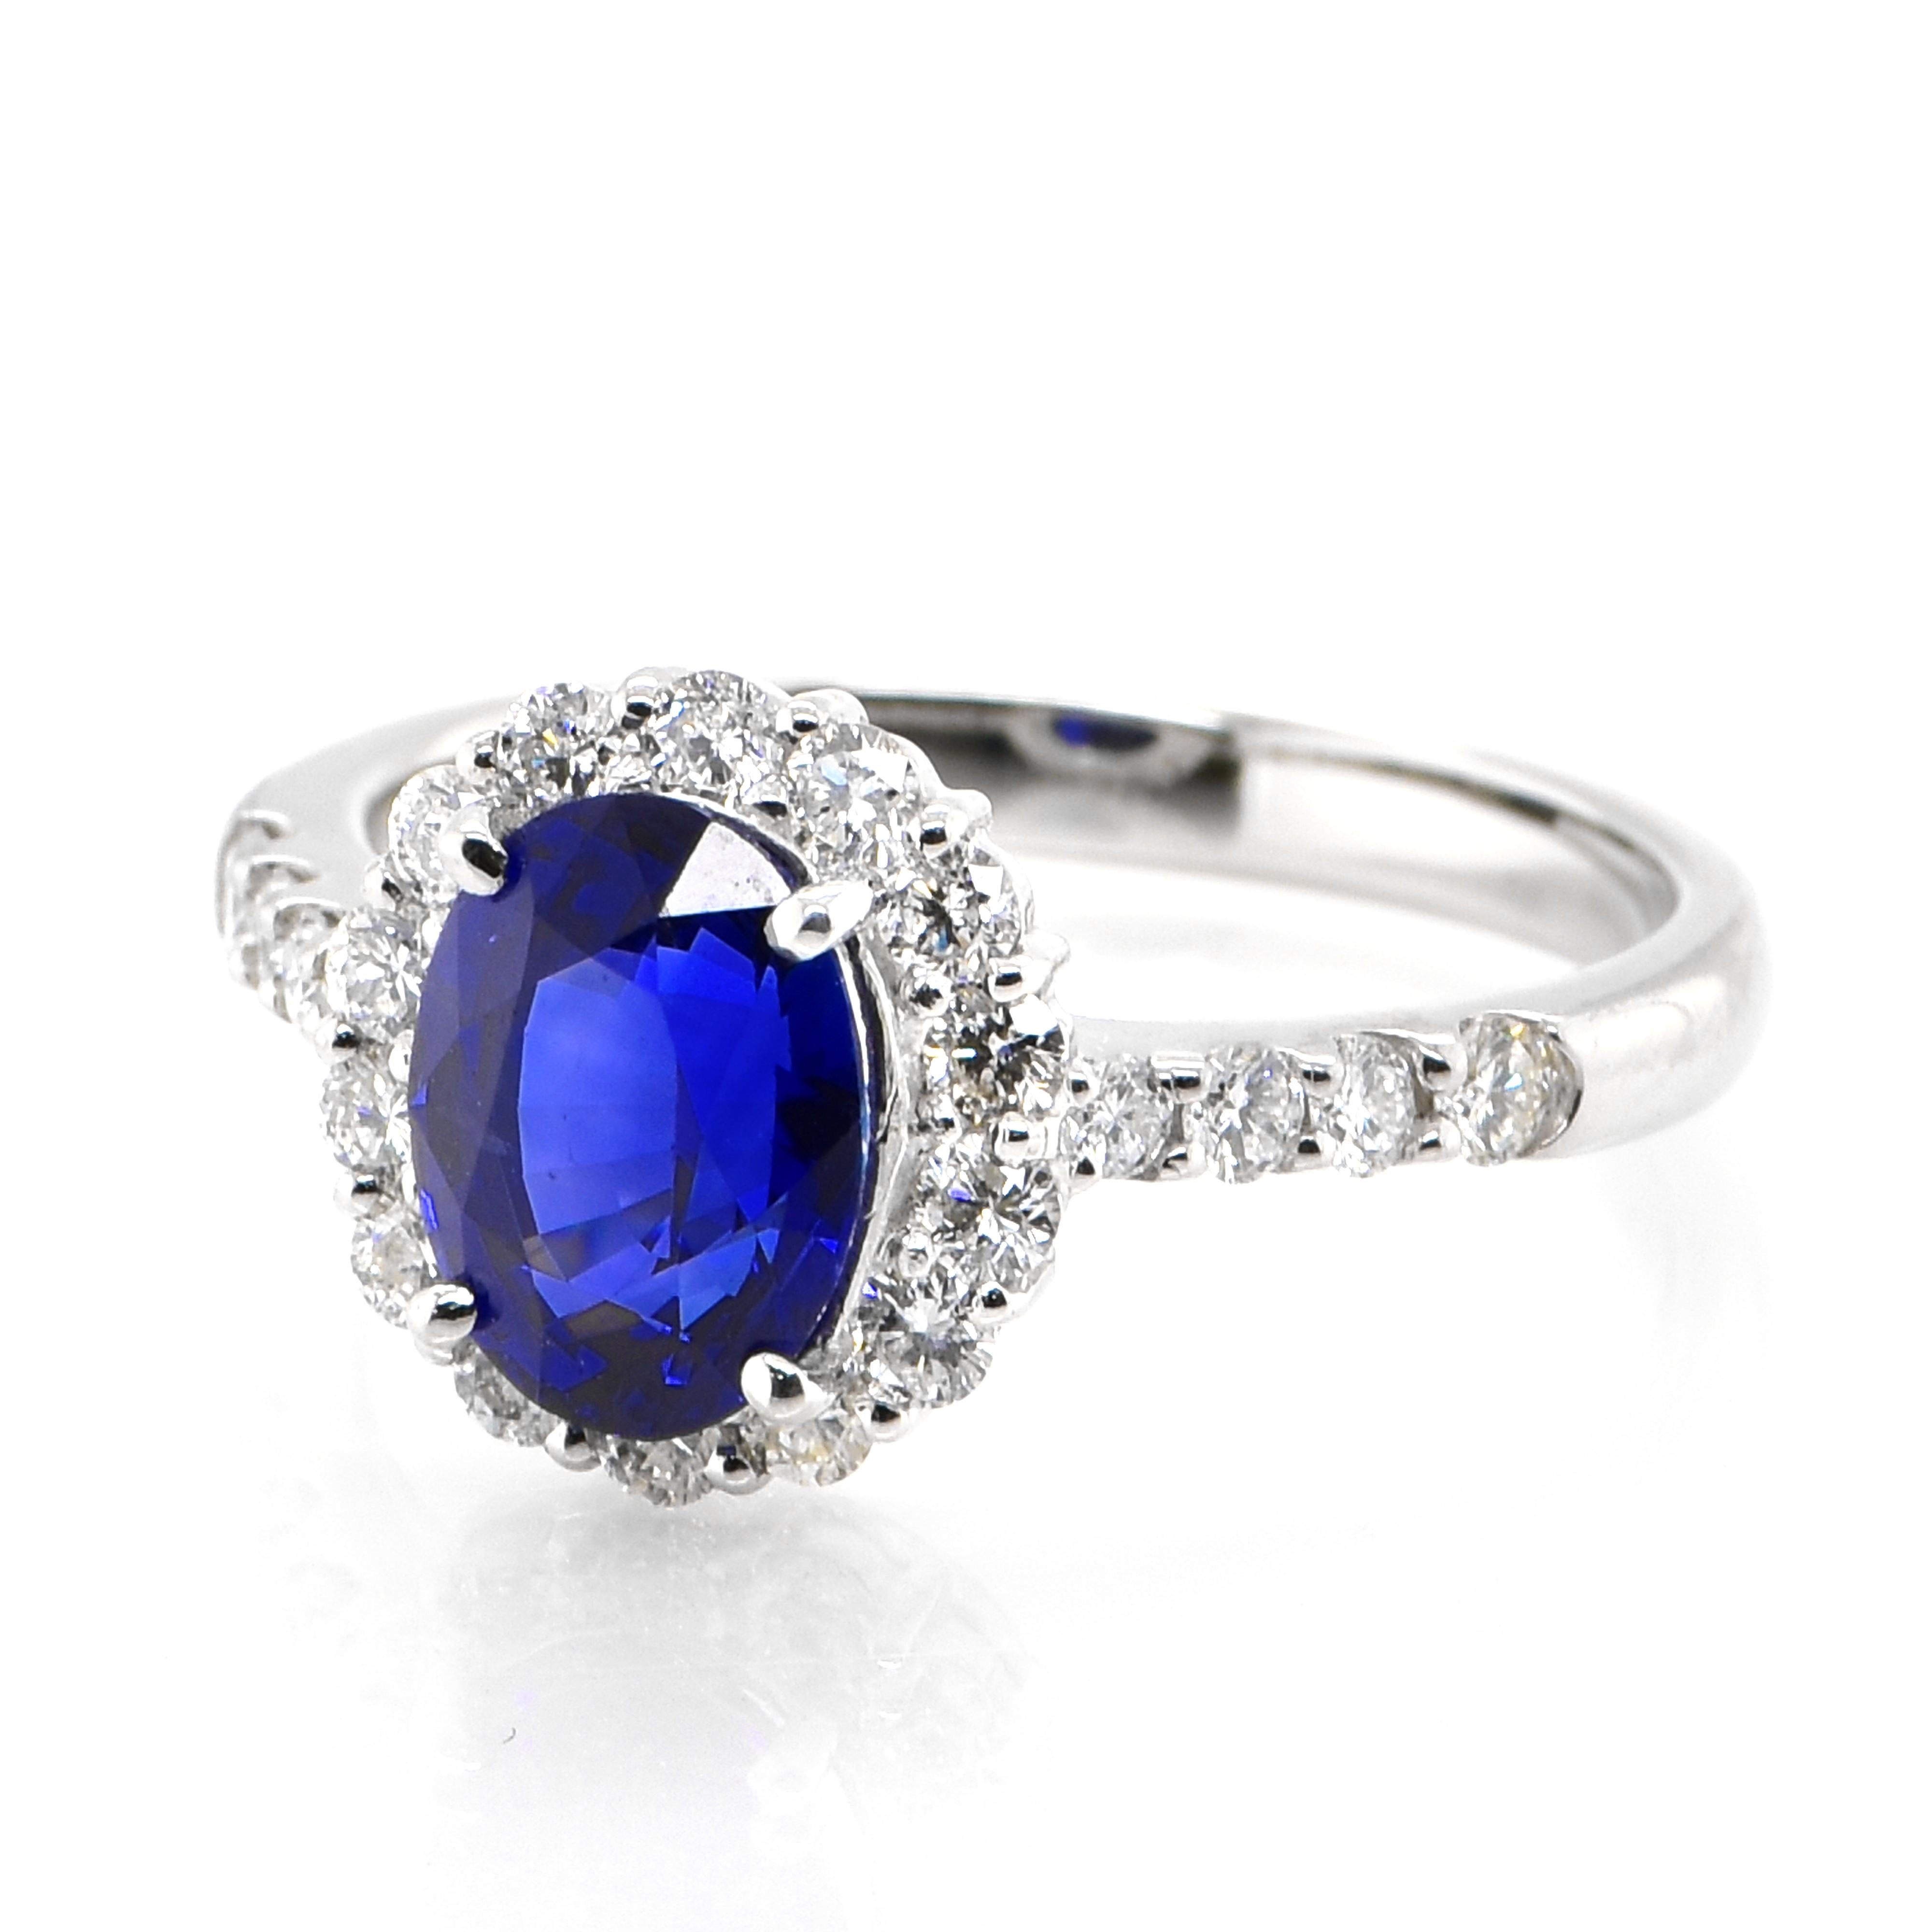 Cette magnifique bague est ornée d'un saphir bleu royal naturel de 1,92 carat et de diamants de 0,55 carat sertis dans du platine. Les saphirs ont une durabilité extraordinaire - ils excellent en termes de dureté ainsi que de résistance et de